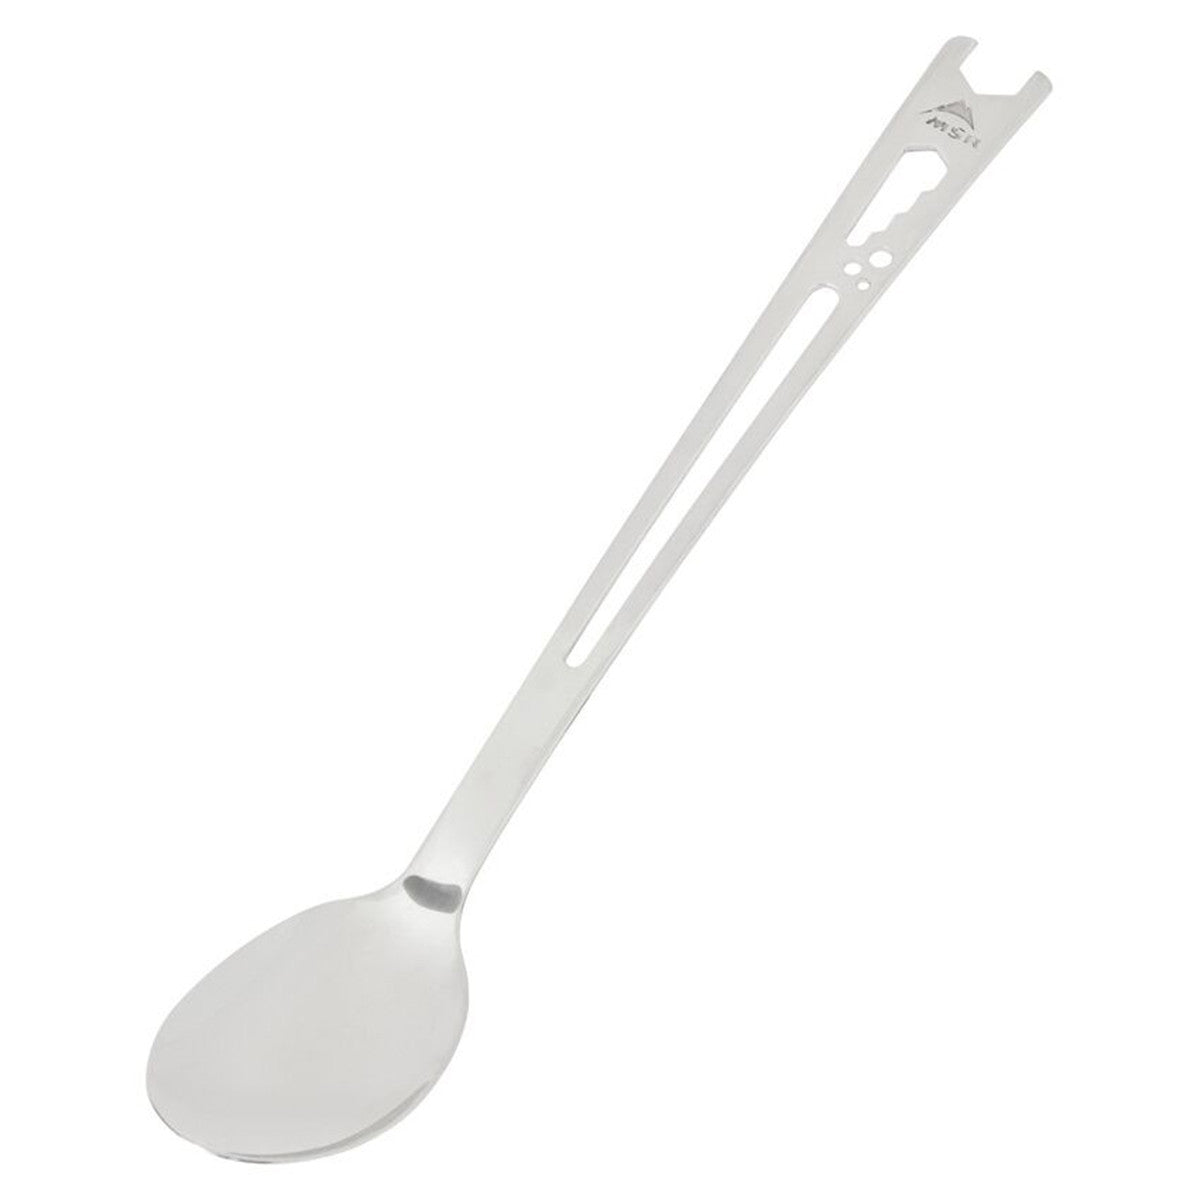 MSR Alpine Long Tool Spoon in MSR Alpine Long Tool Spoon - goHUNT Shop by GOHUNT | MSR - GOHUNT Shop